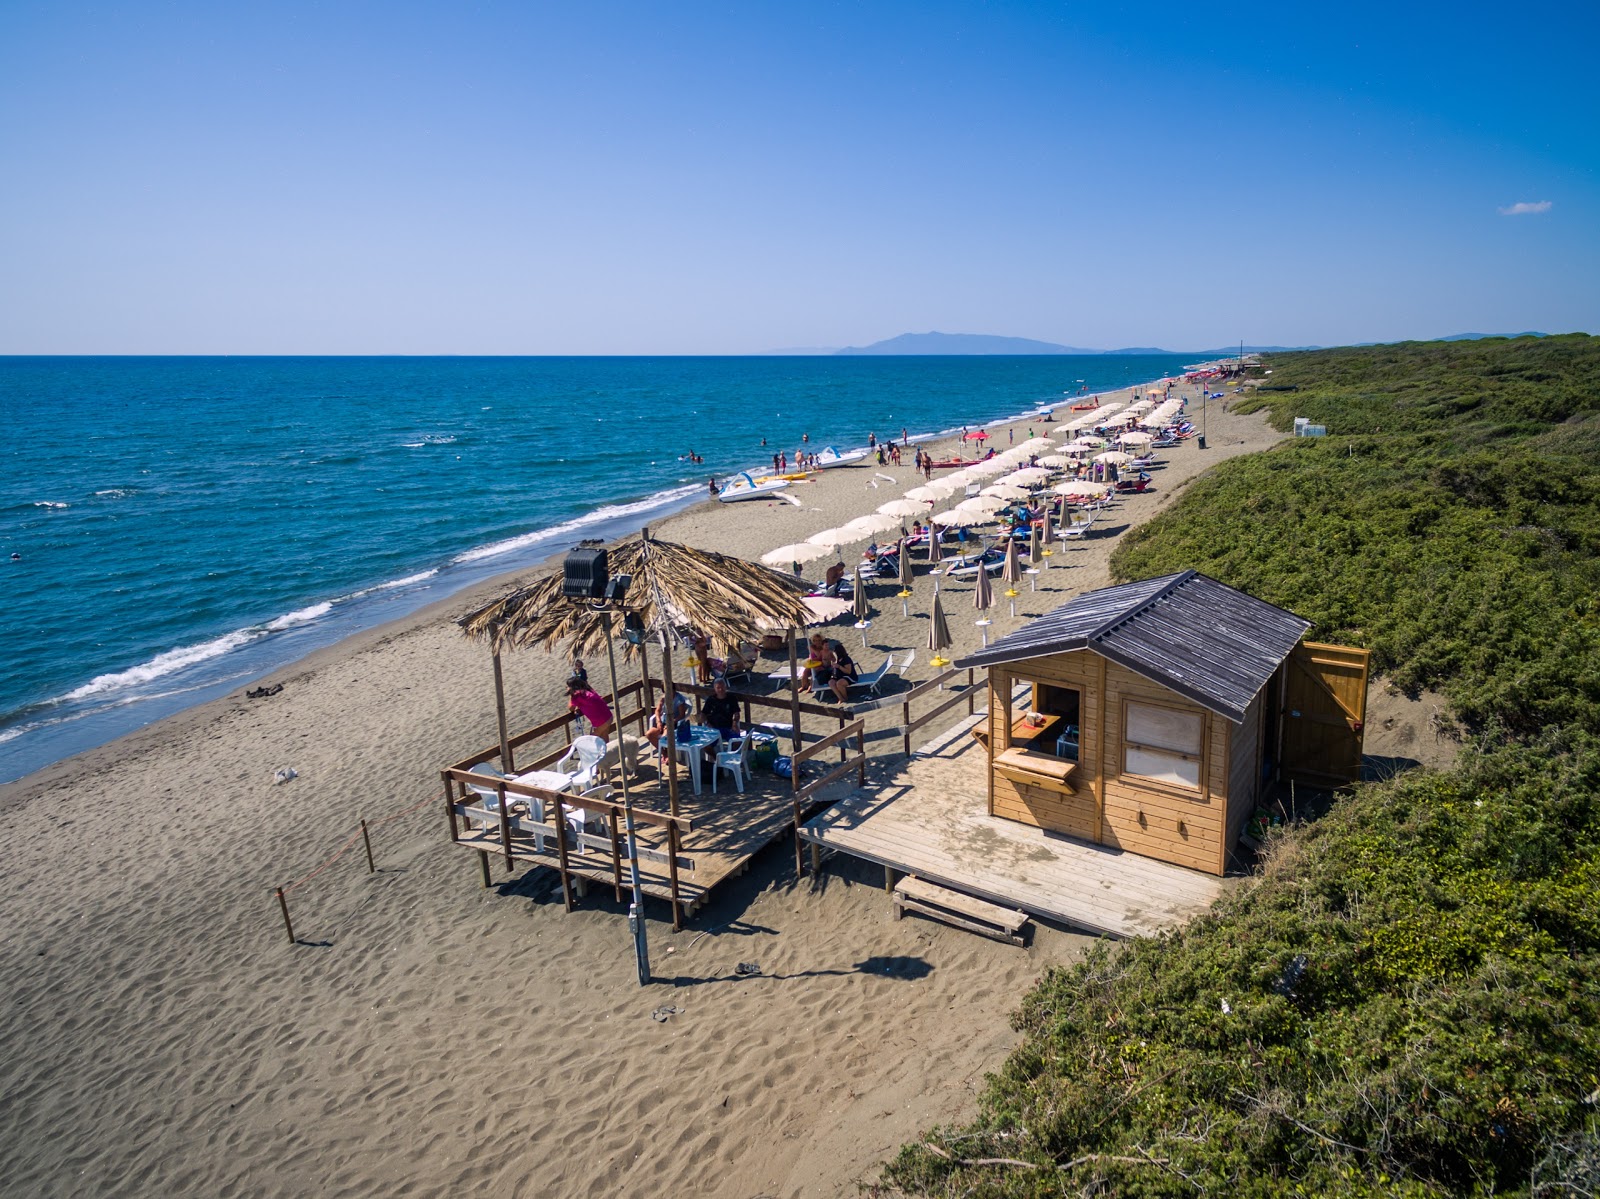 Foto av Spiaggia di Pescia Romana med ljus sand yta